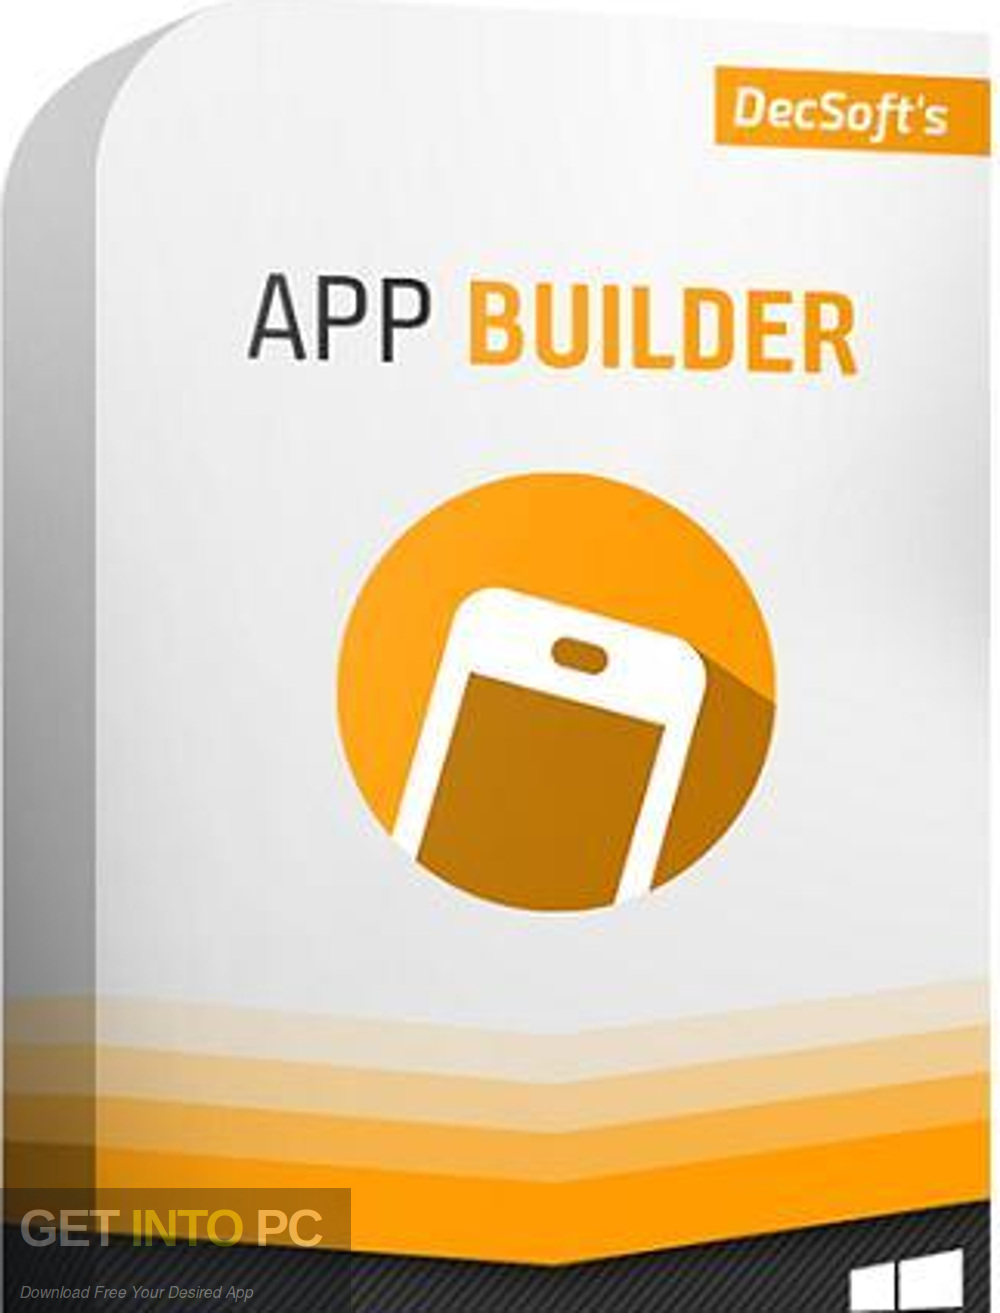 App Builder 2019 Free Download GetintoPC.com